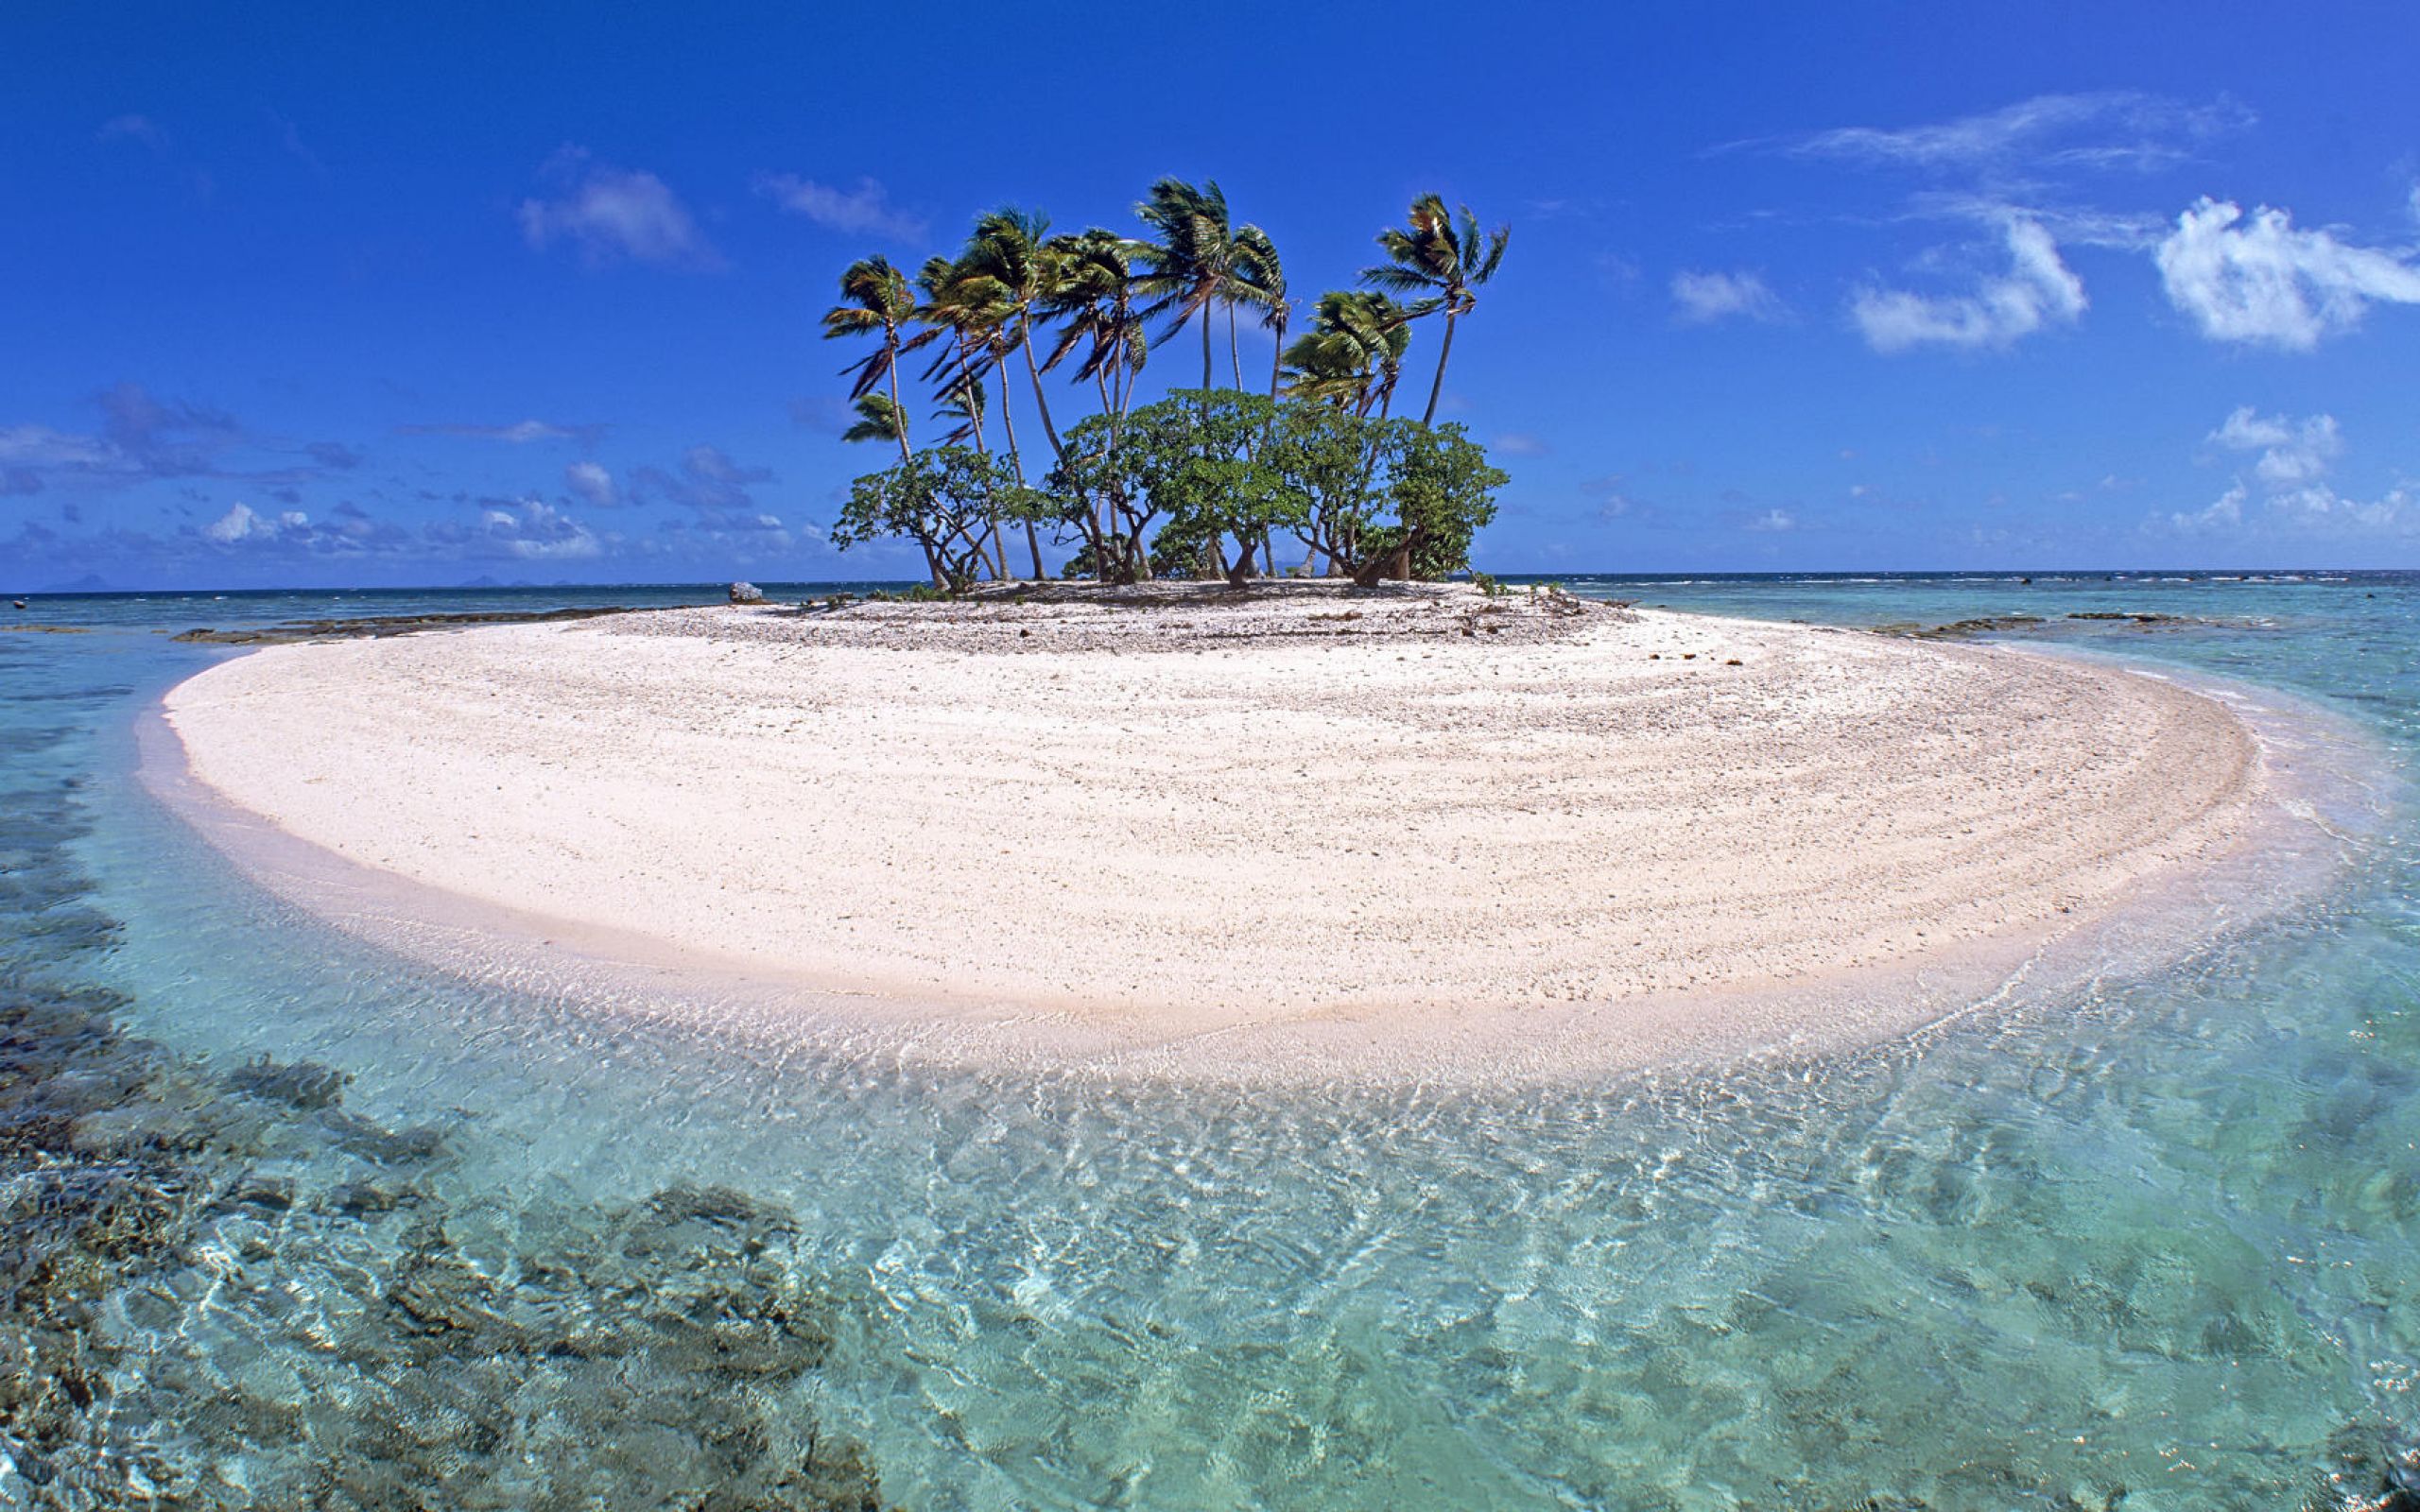 Ocean is beautiful. Каролинские острова Атолл. Атолл коралловый остров. Парадиз остров Карибского моря. Атоллы Микронезии.